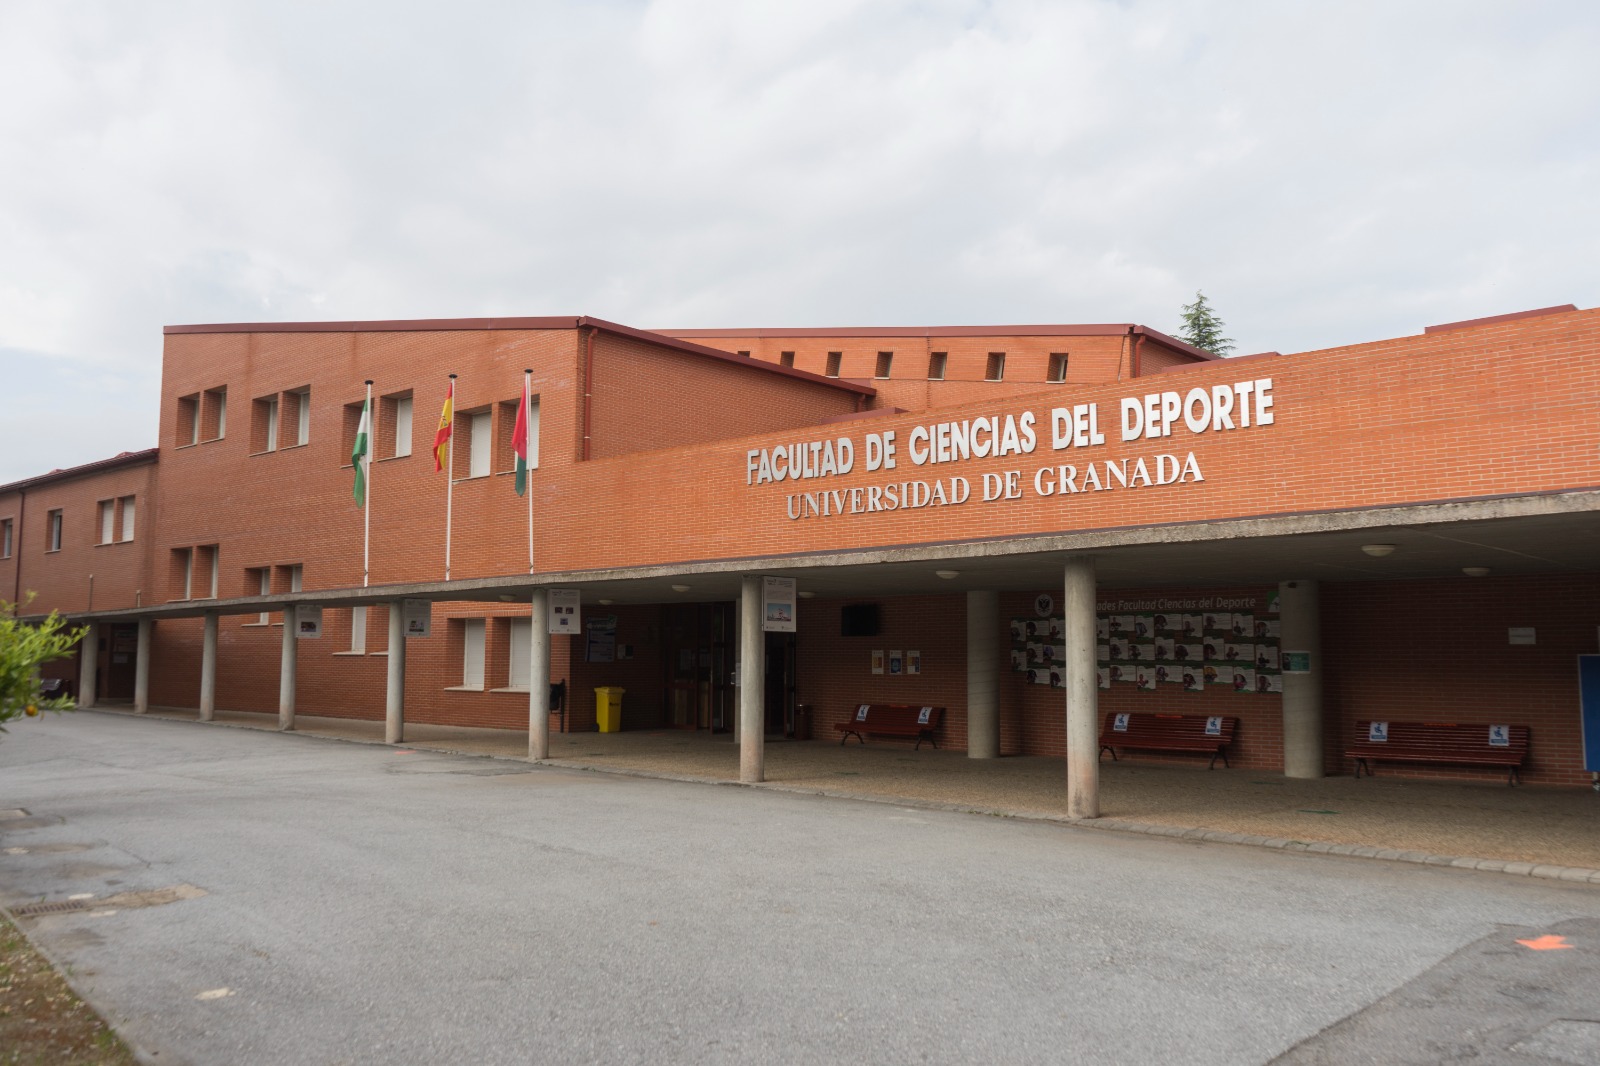  Facultad de Ciencias del Deporte de la Universidad de Granada (UGR)